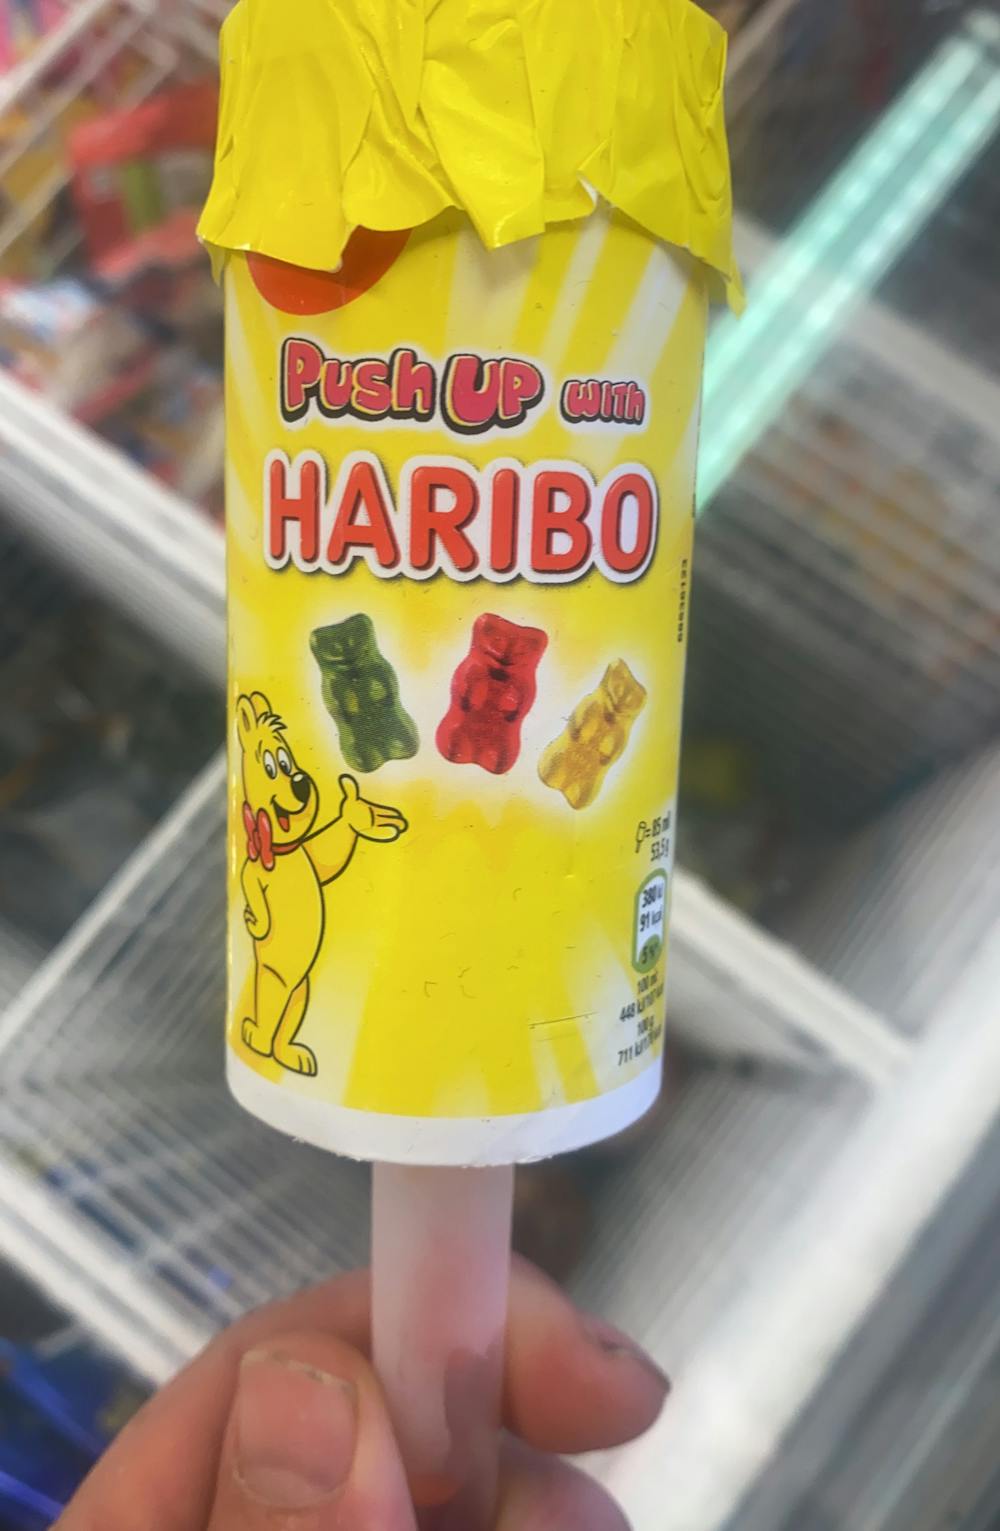 Push ut with Haribo, Haribo